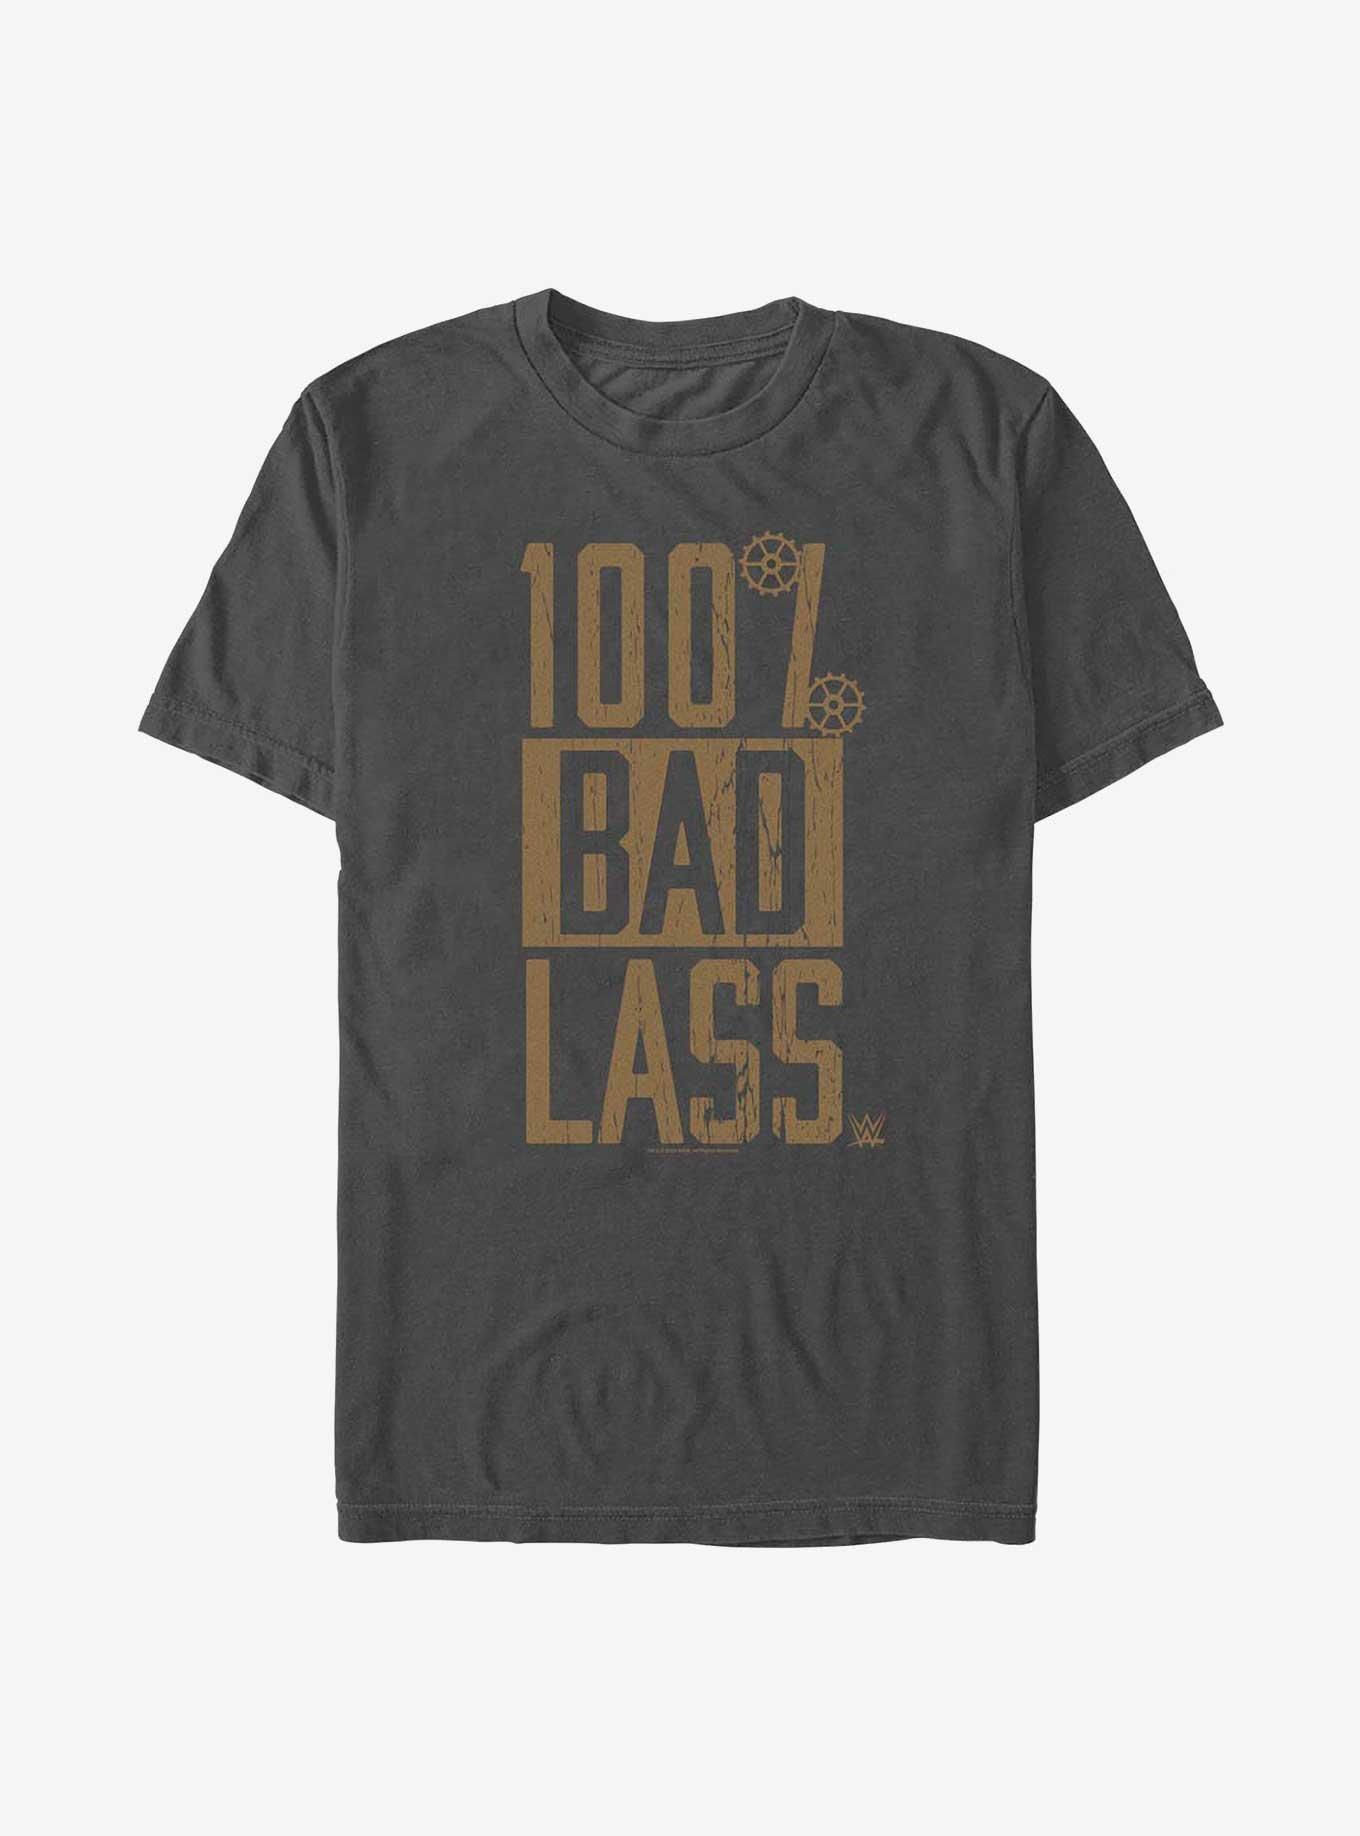 WWE Becky Lynch 100% Bad Lass T-Shirt